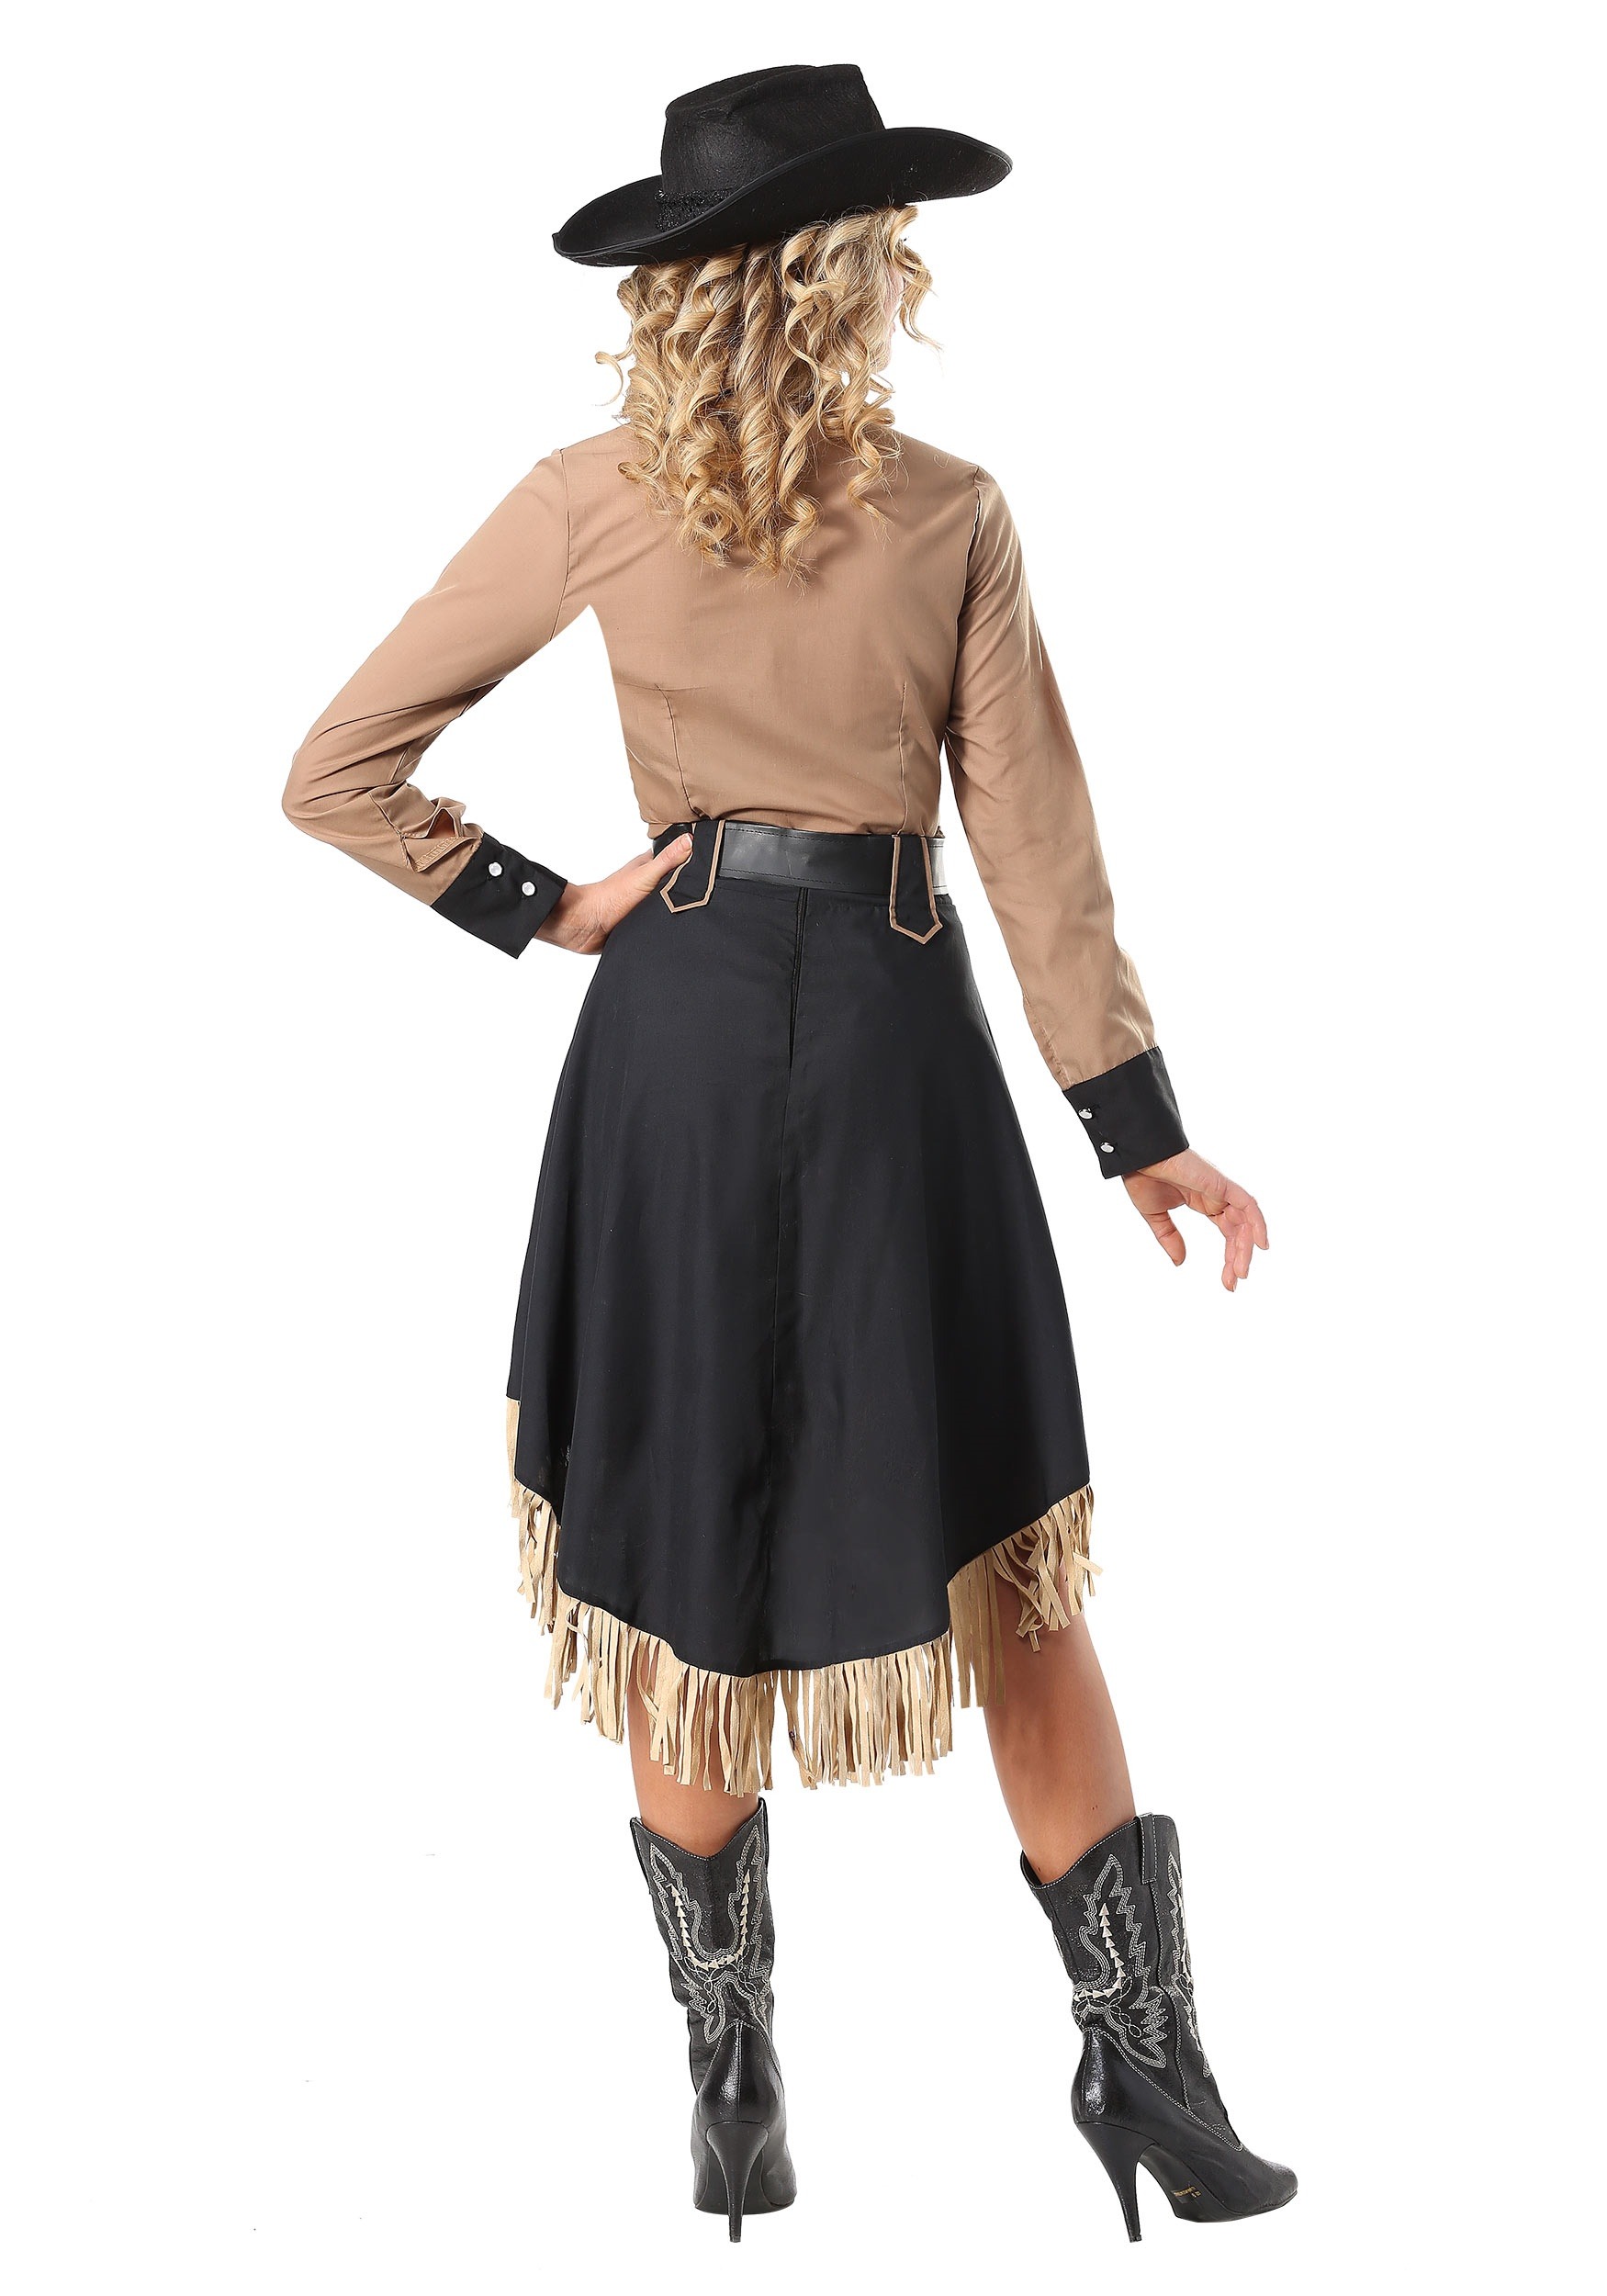 Lasso'n Cowgirl Women's Fancy Dress Costume